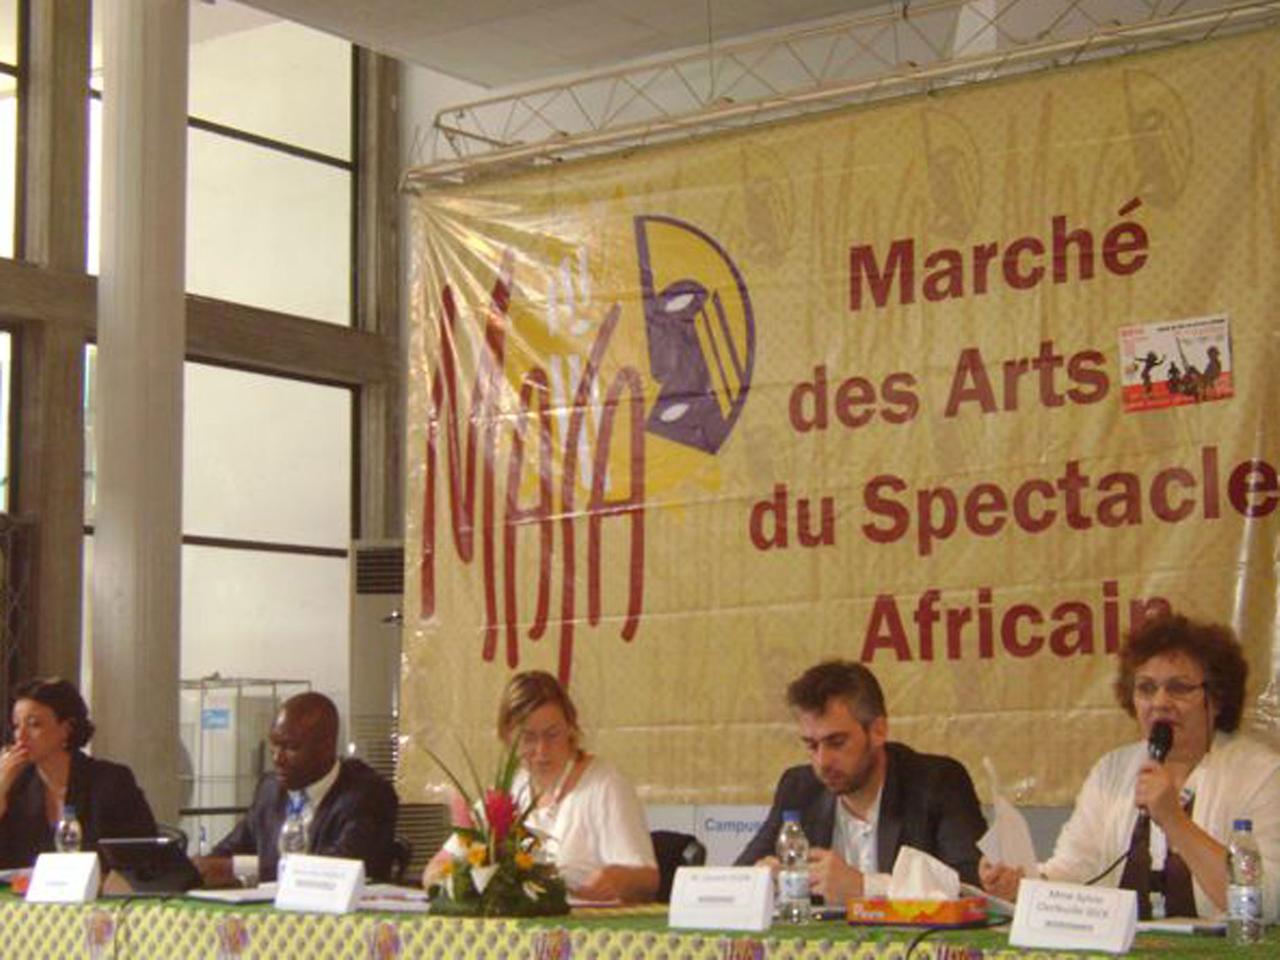 Auf dem "marché des arts du spectacle africain" finden auch Podiumsdiskussionen statt - das Thema ist Kunst und Musik aus Afrika